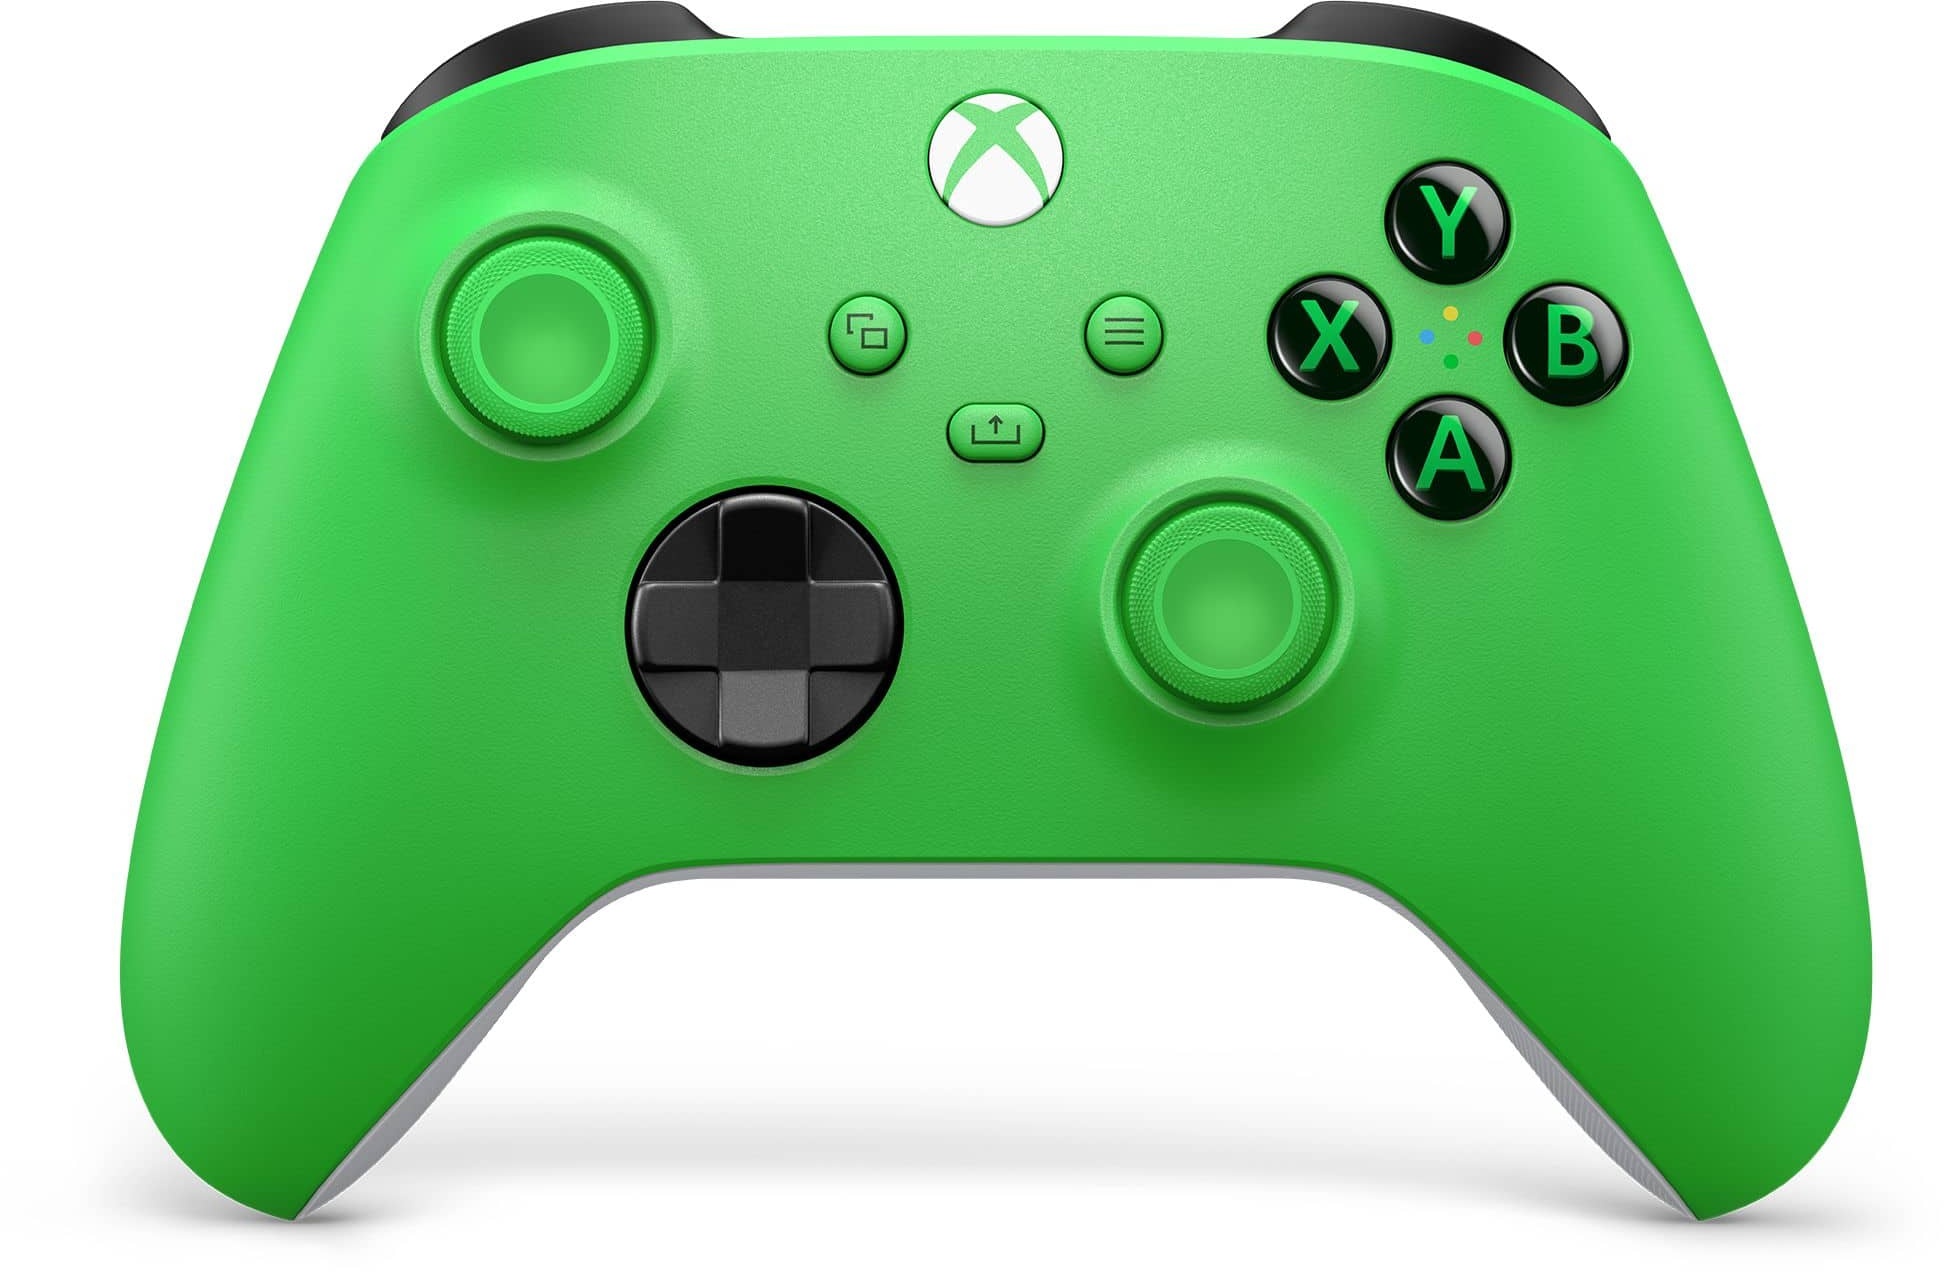 Xbox Wireless Controller Analog / Digital Gamepad Android, PC, Xbox One, Xbox Series S, Xbox Series X, iOS kabelgebunden&kabellos (Grün)